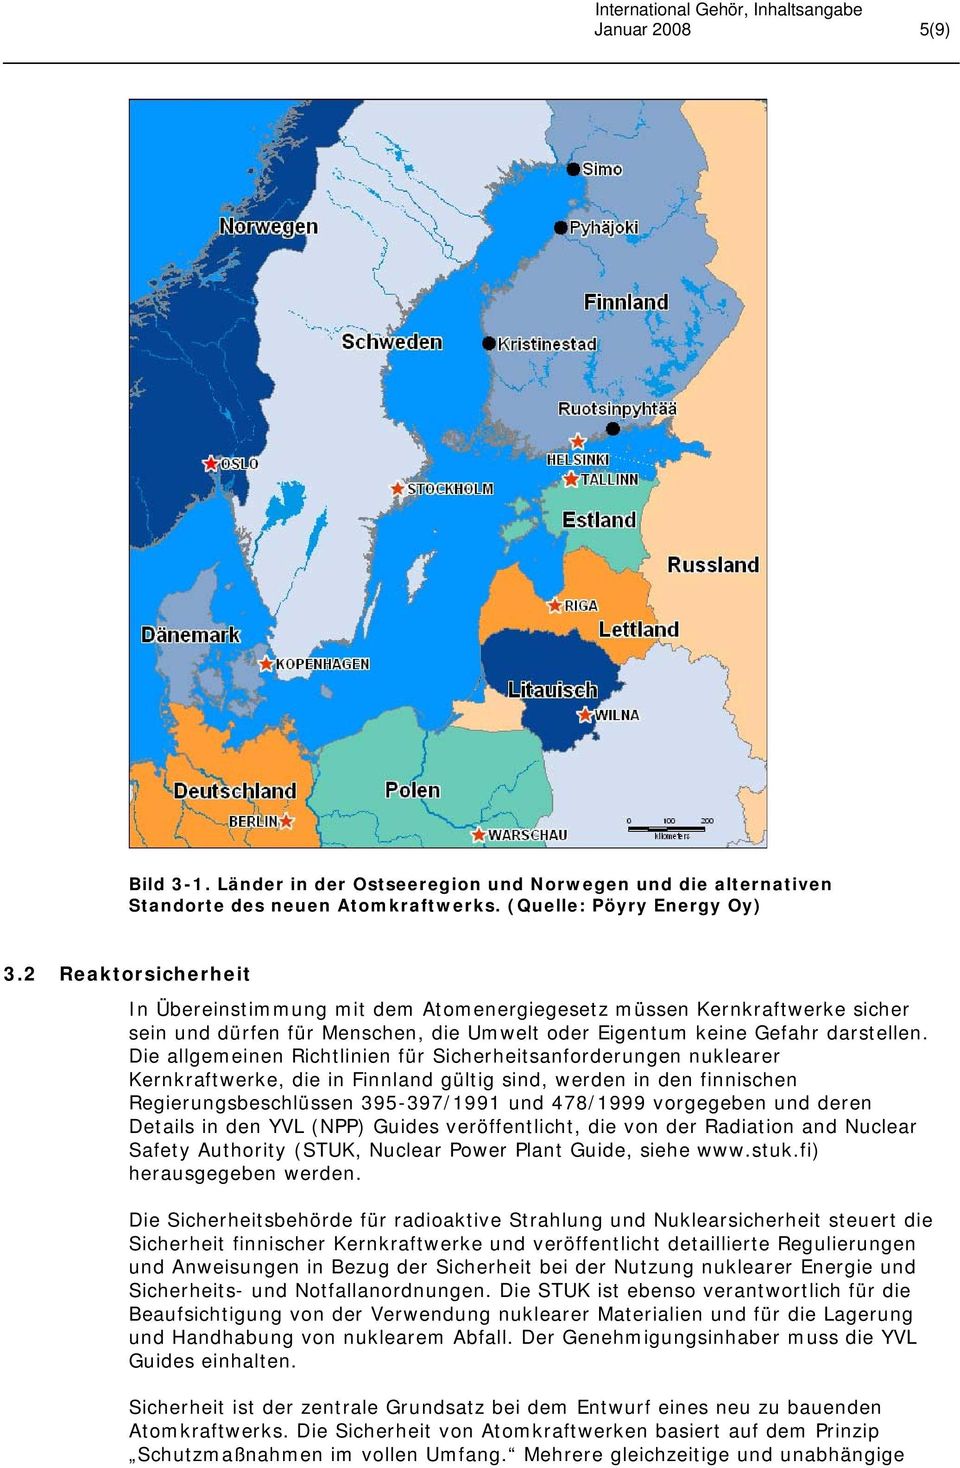 Die allgemeinen Richtlinien für Sicherheitsanforderungen nuklearer Kernkraftwerke, die in Finnland gültig sind, werden in den finnischen Regierungsbeschlüssen 395-397/1991 und 478/1999 vorgegeben und